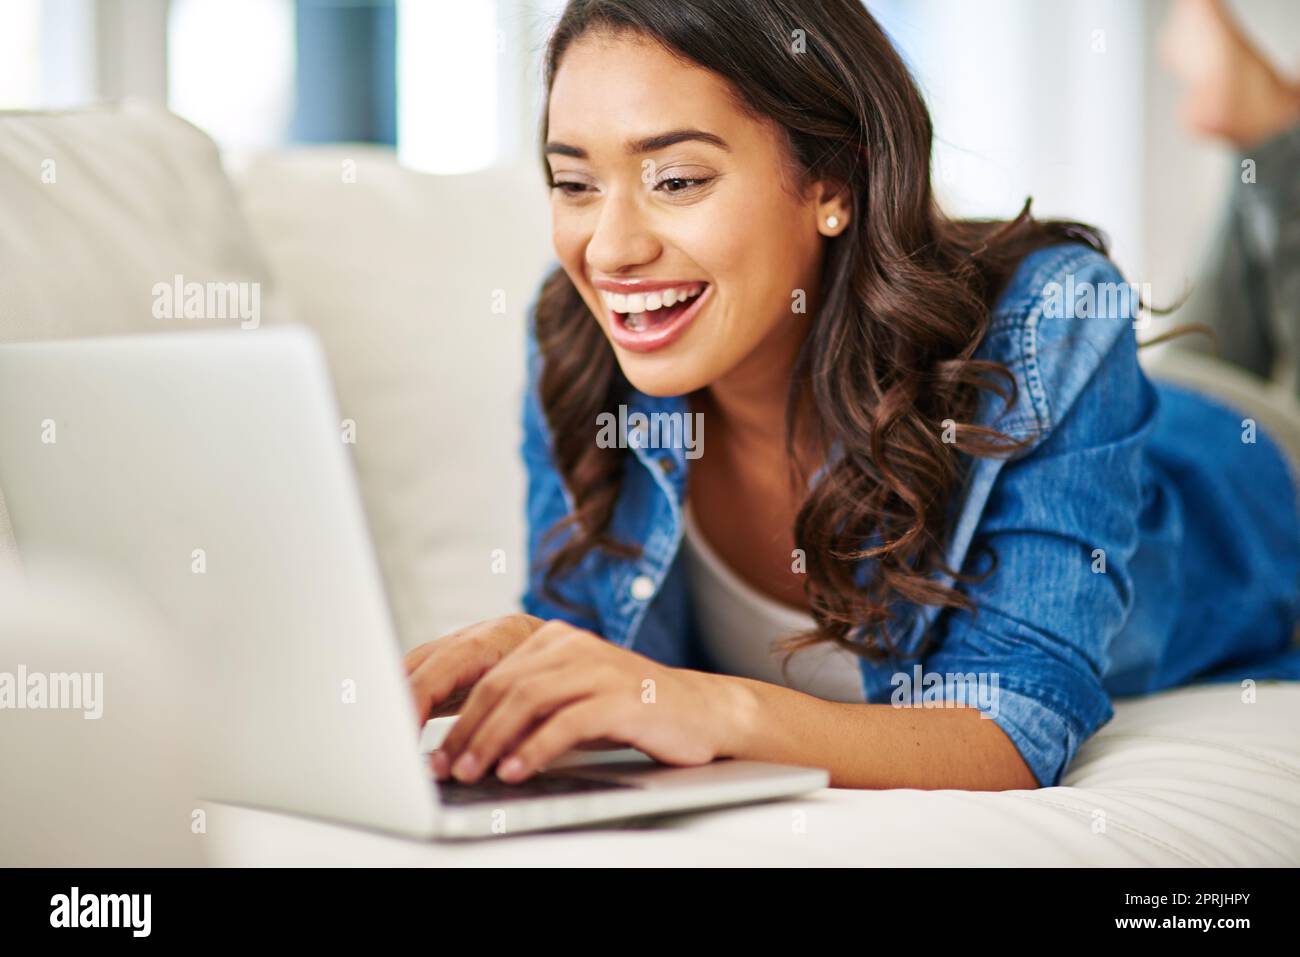 Eine attraktive junge Frau, die ihren Laptop benutzt, während sie auf dem Sofa liegt. Stockfoto